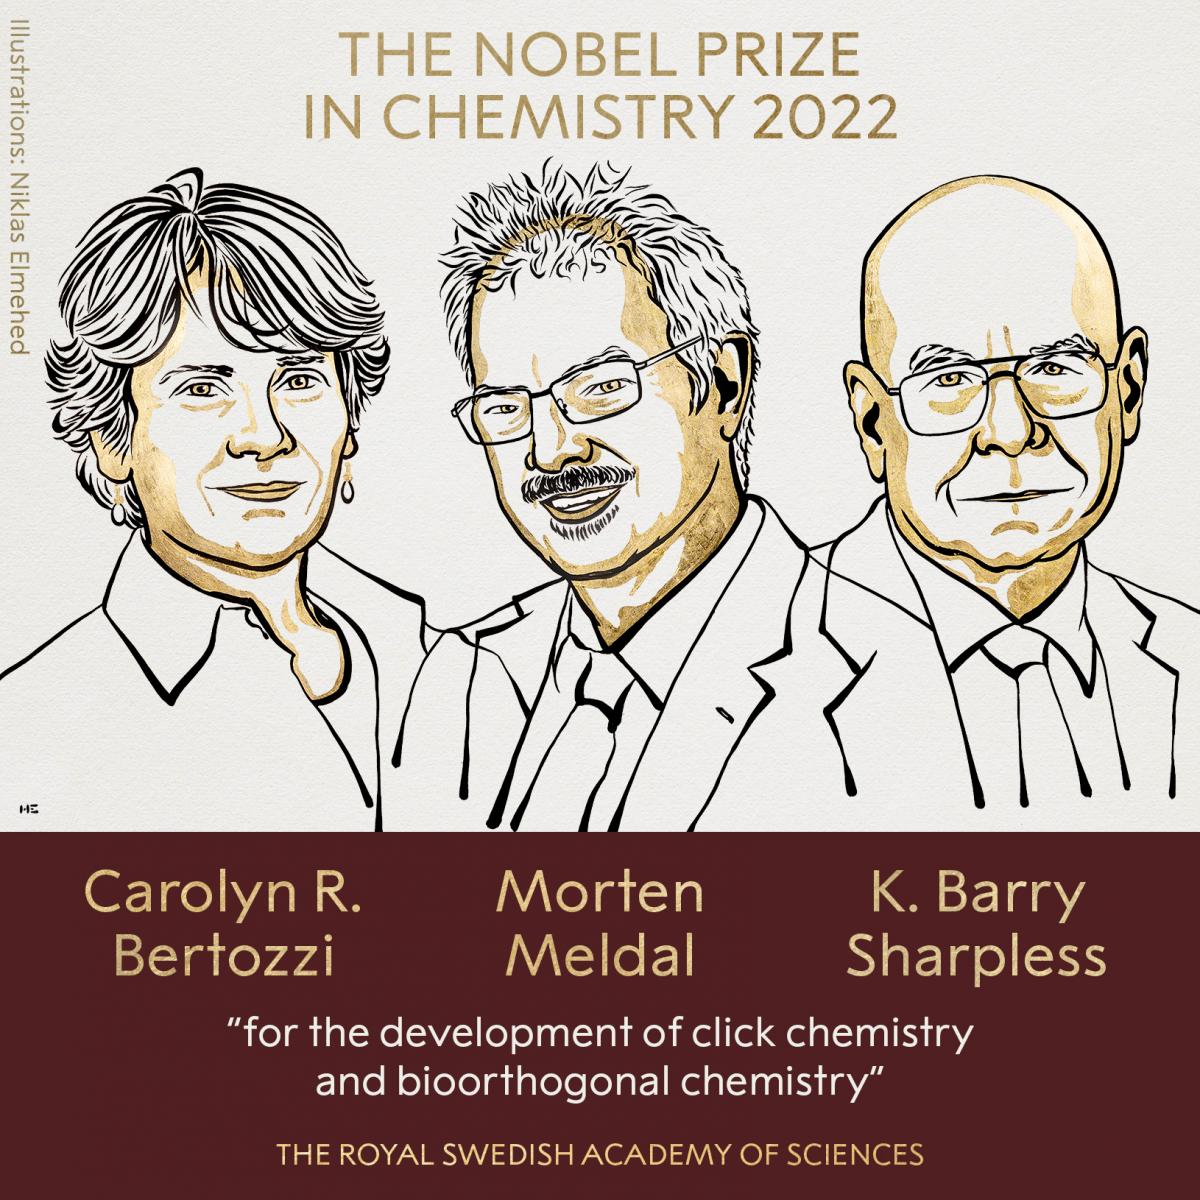 Premiul Nobel pentru Chimie s-a acordat pentru dezvoltarea chimiei click și bio-ortogonale